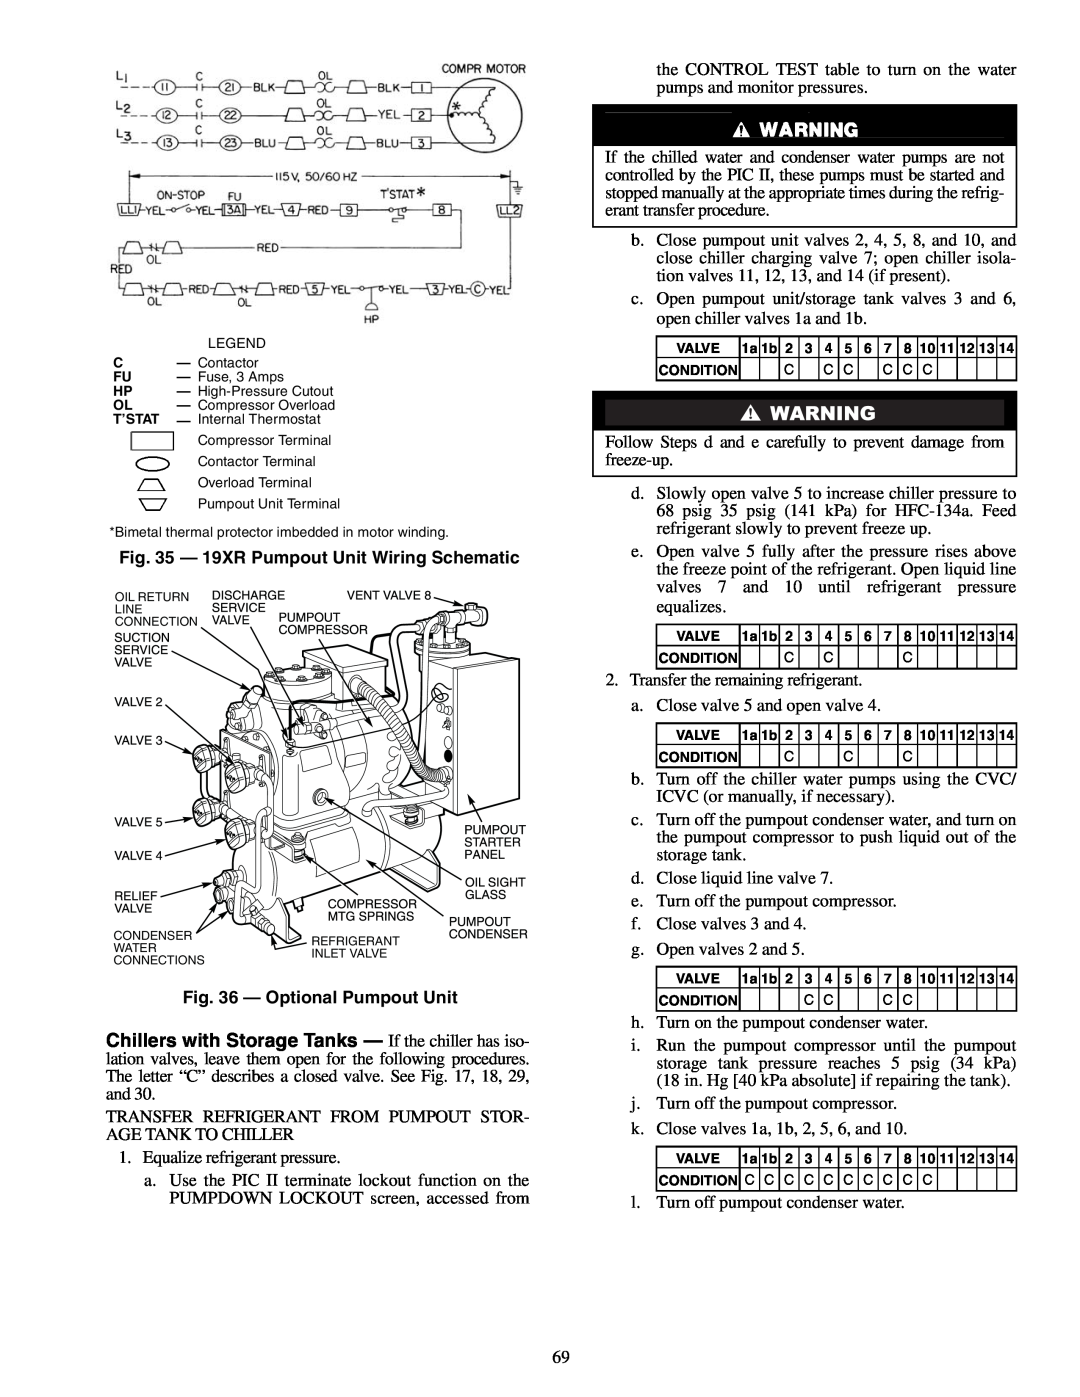 Carrier XRV specifications 19XR Pumpout Unit Wiring Schematic, Optional Pumpout Unit 